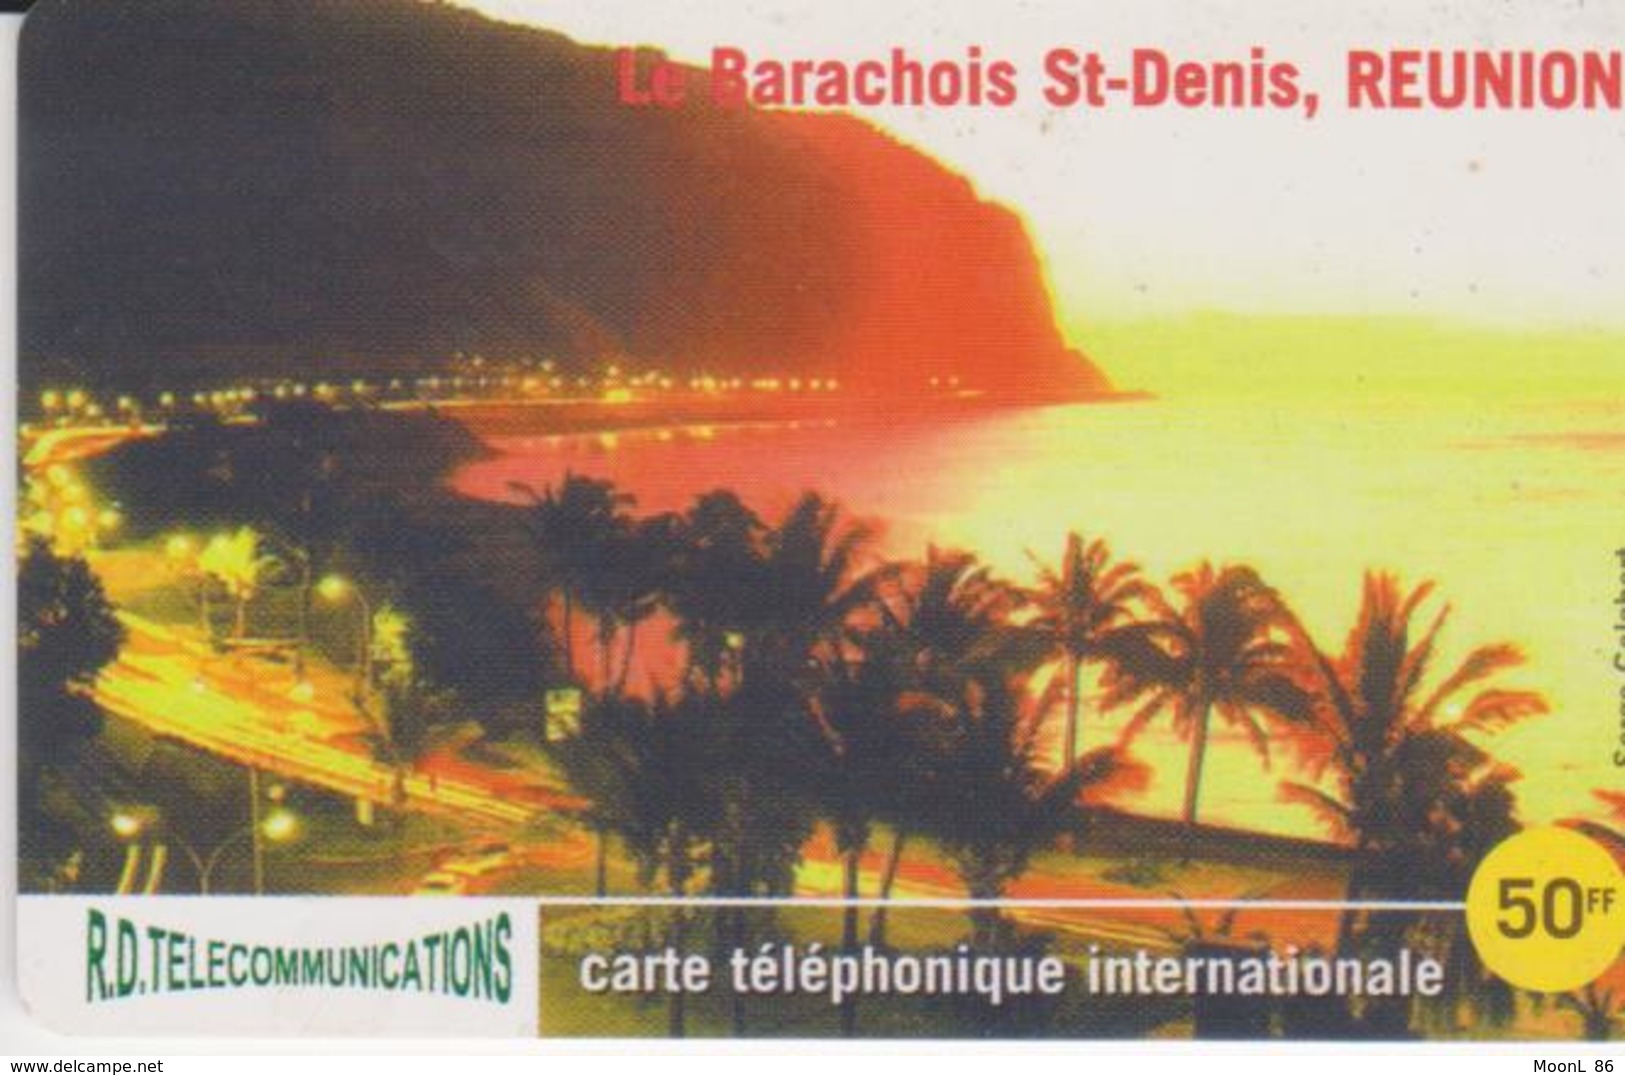 RARE Telecarte Carte Téléphone INTERNATIONALE  ILE DE LA REUNION  ST DENIS LE BARACHOIS  R.D. TELECOMMUNICATIONS  50 F - Riunione